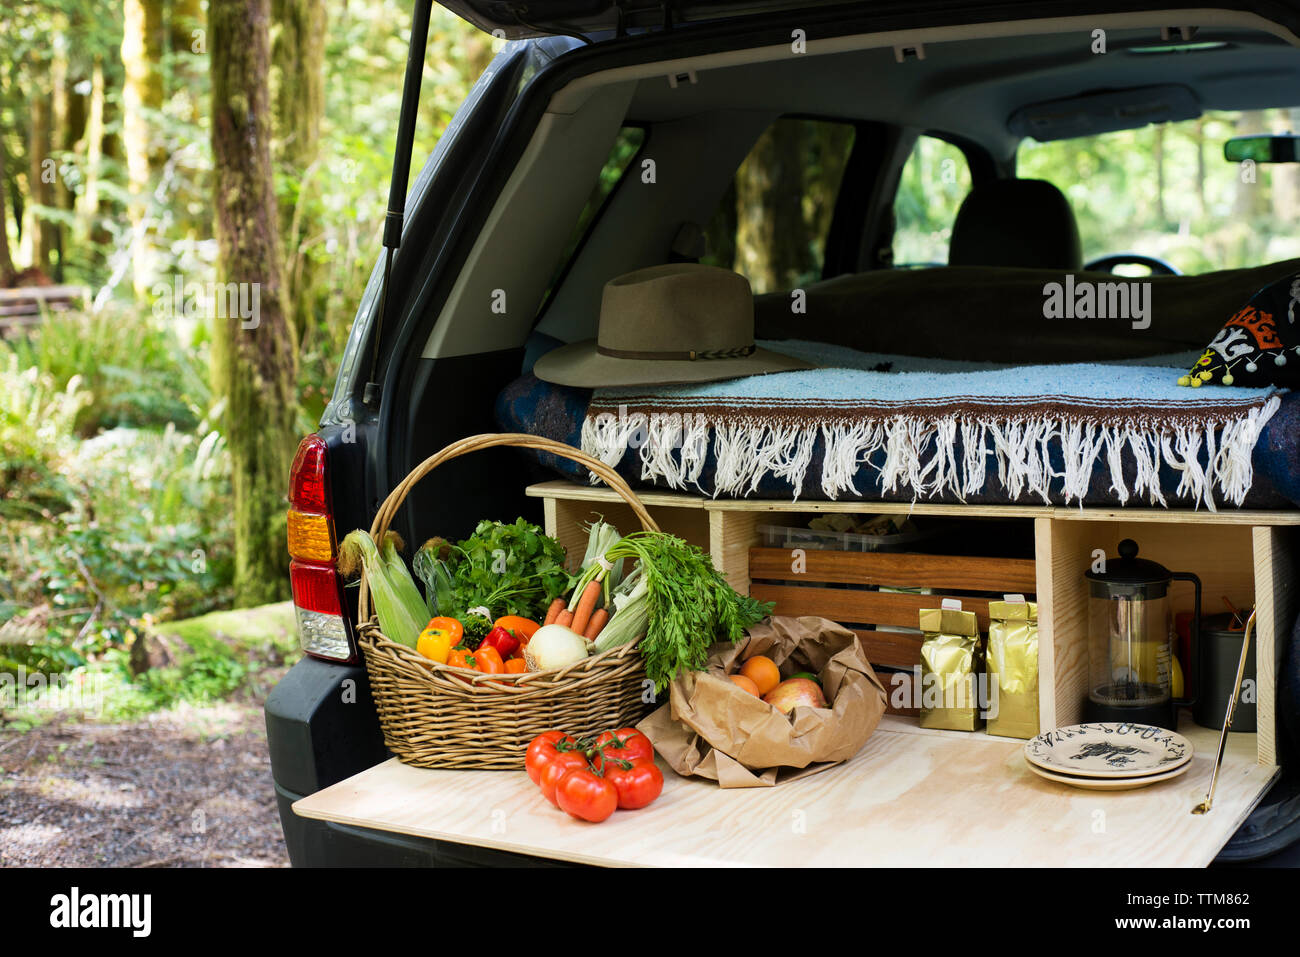 Gemüse im Korb im Kofferraum von SUV Stockfotografie - Alamy